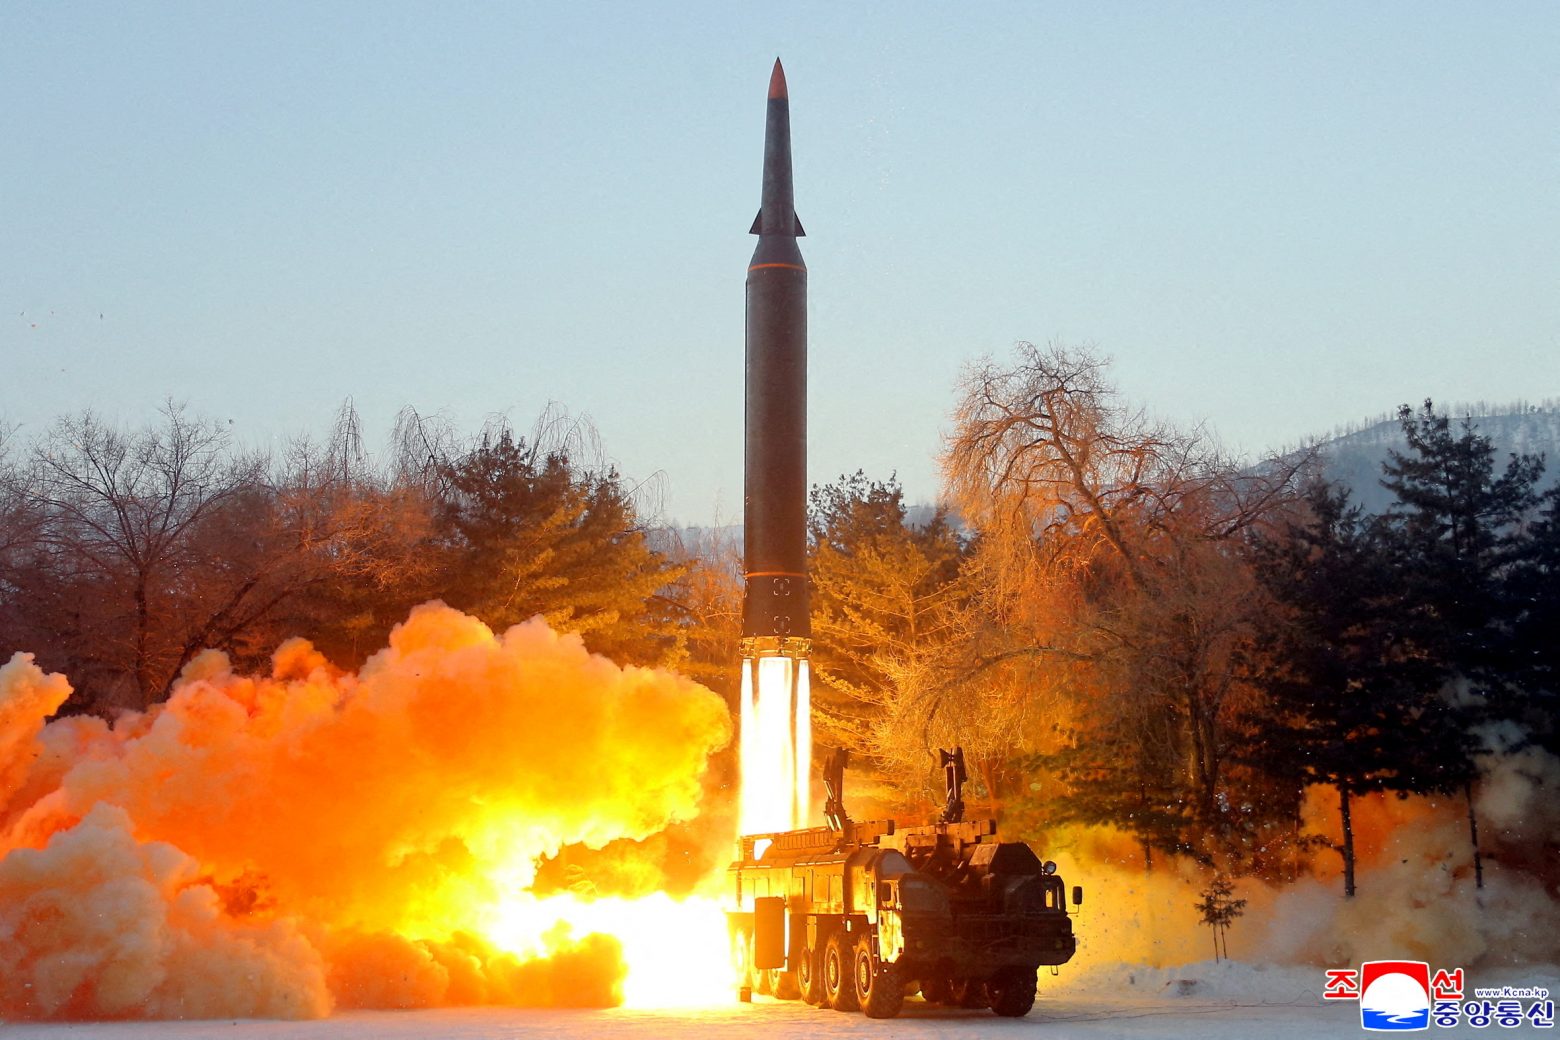 Βόρεια Κορέα: Εκτοξεύει άλλους τρεις πυραύλους – Ανάμεσά τους κι ένας διηπειρωτικός